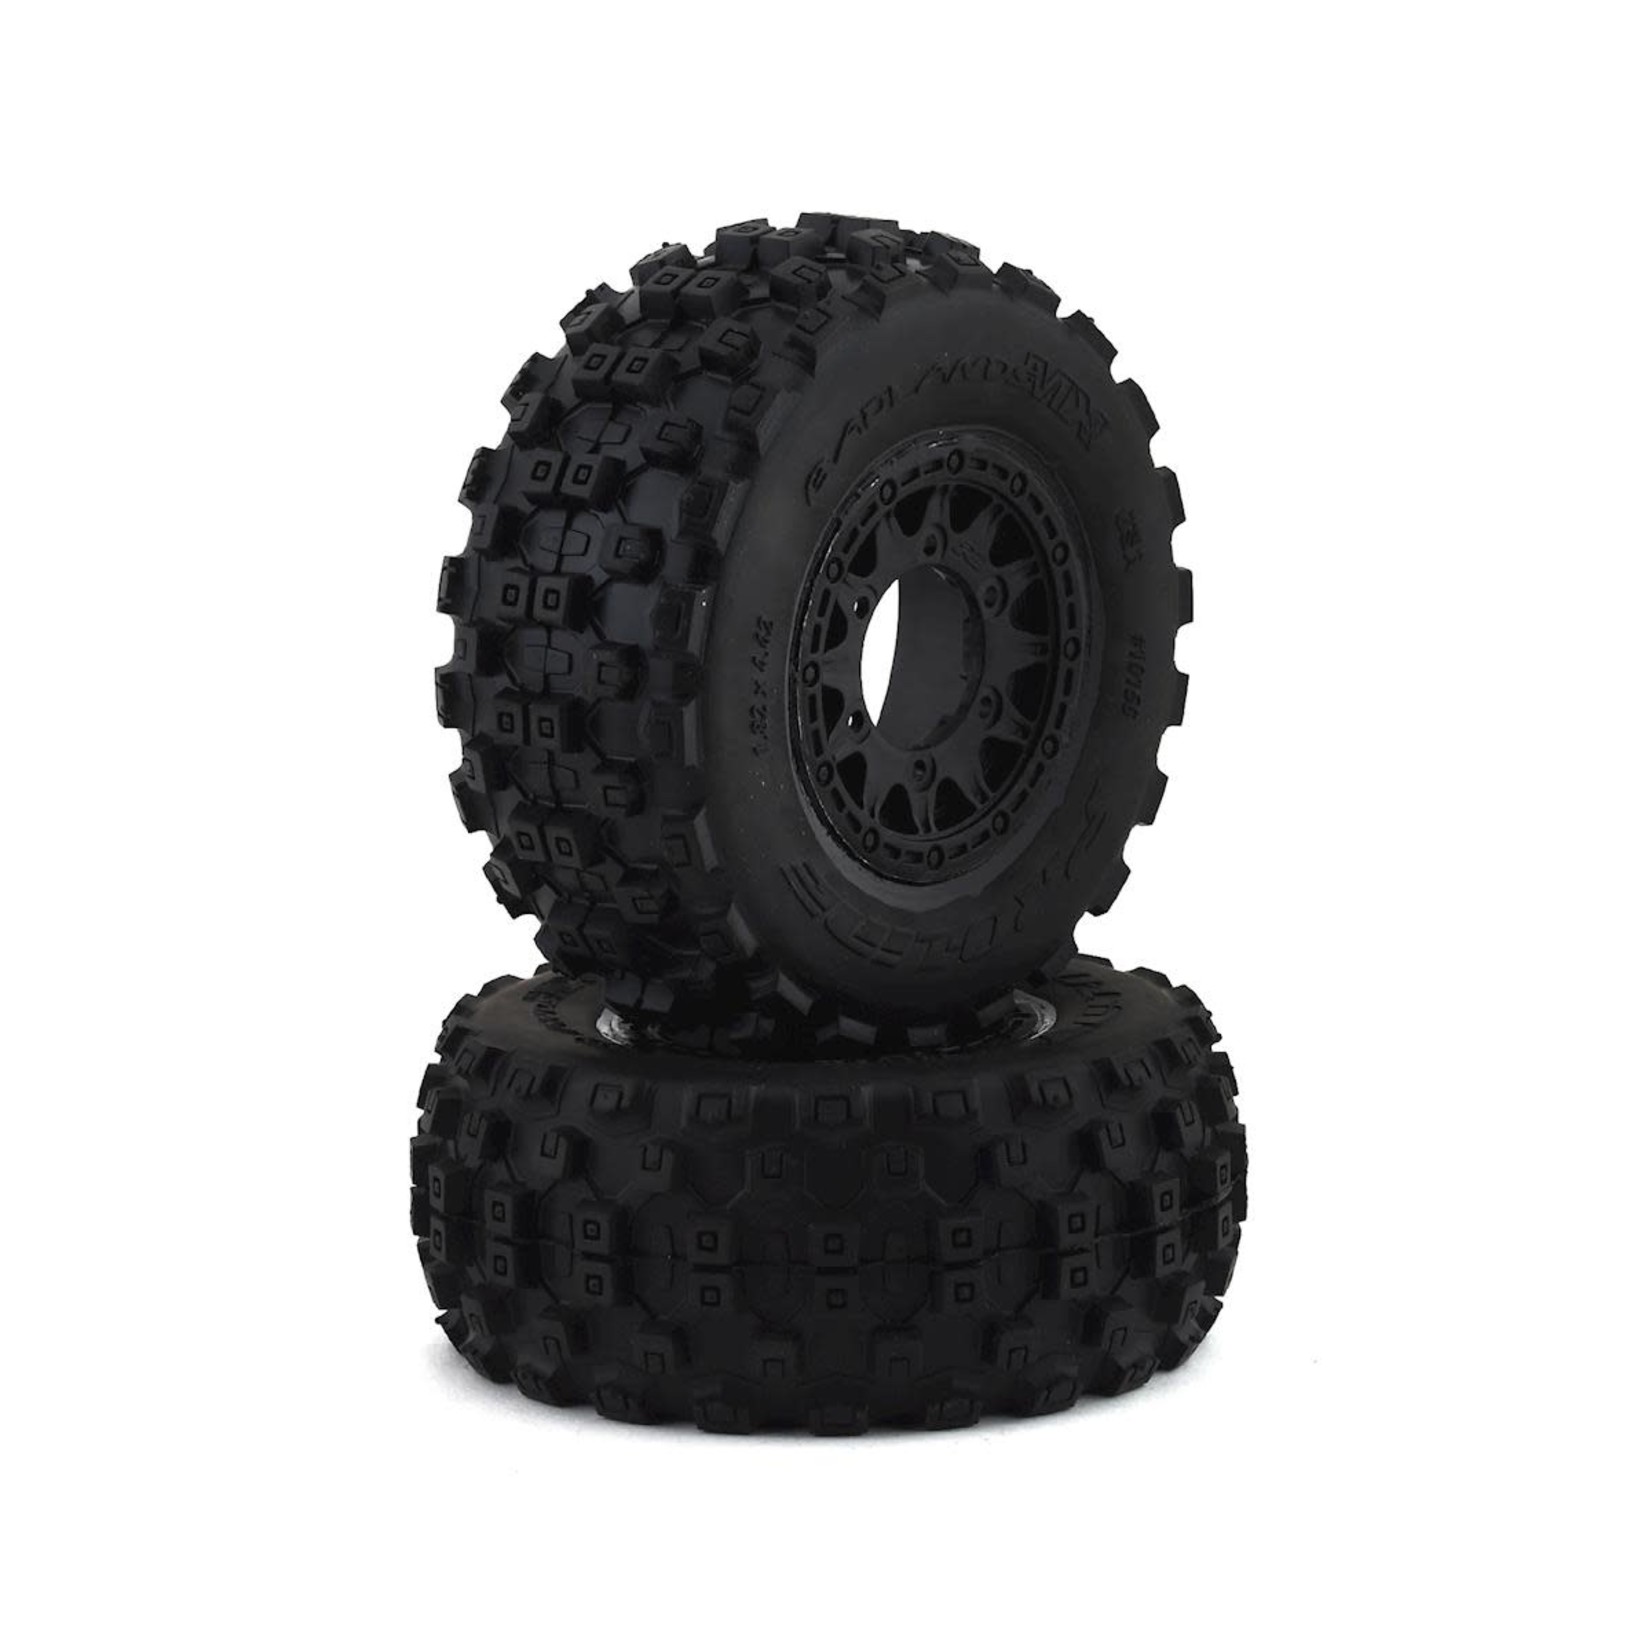 Pro-Line Pro-Line Badlands MX SC Tires w/Raid Wheels (Black) (2) (Slash Front) (M2) w/12mm Hex #10156-10